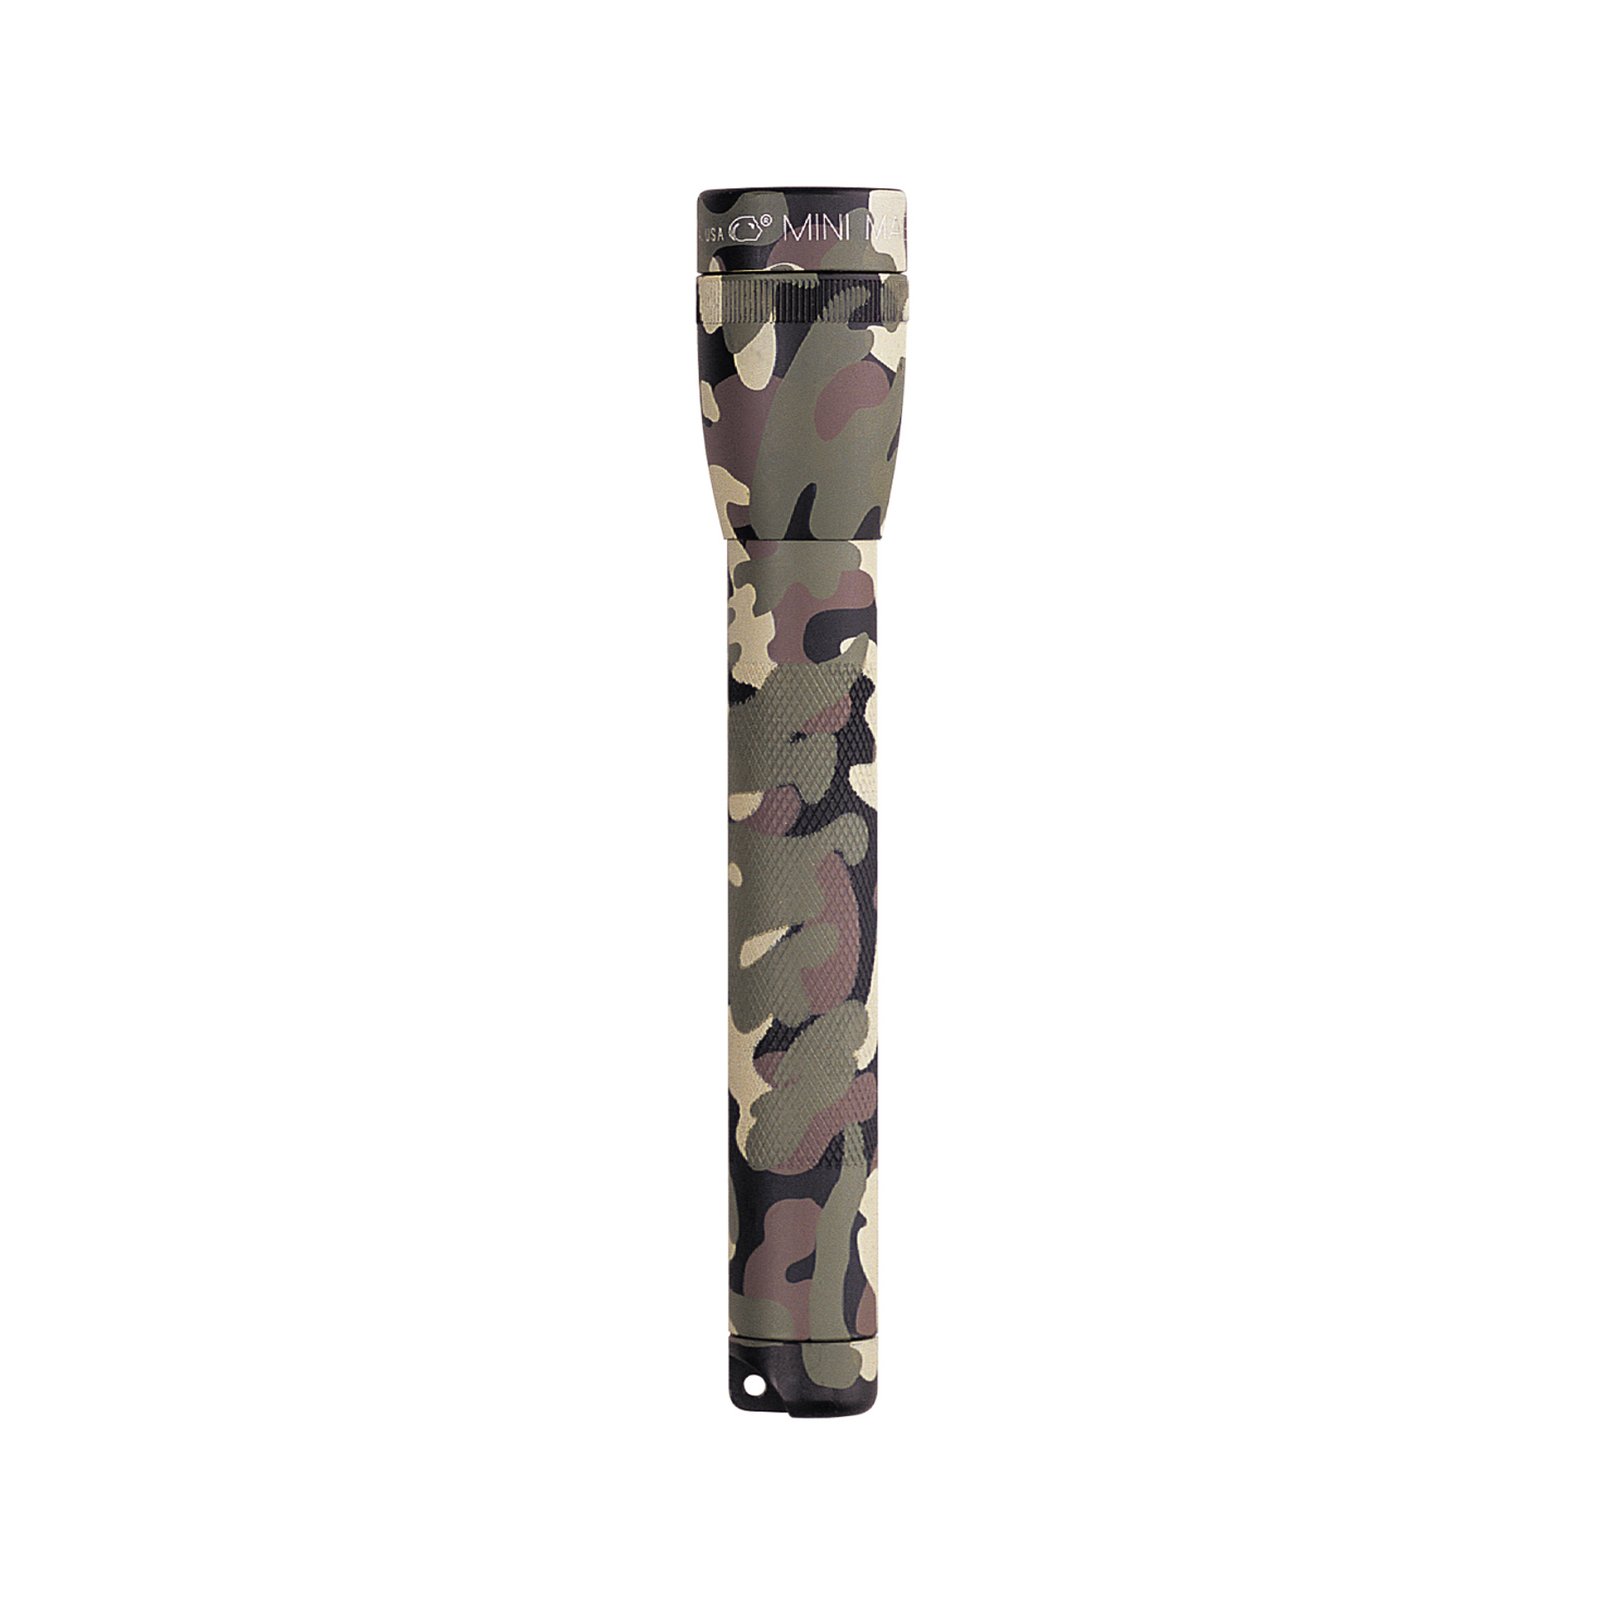 Maglite lampe de poche au xénon Mini, 2-Cell AA, Box, Camouflage